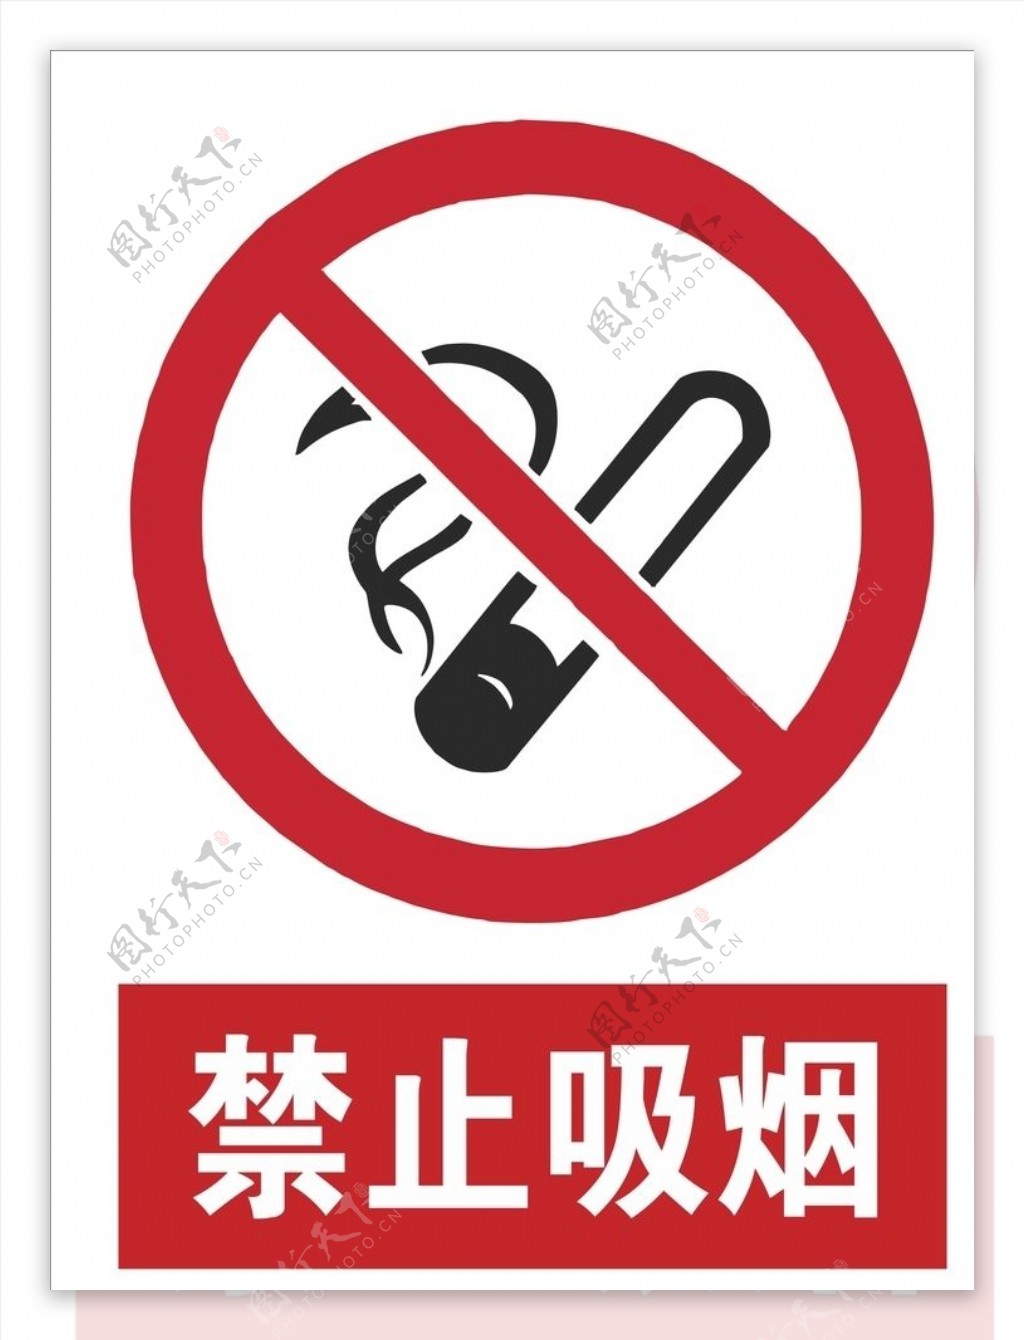 严禁吸烟安全标识图片